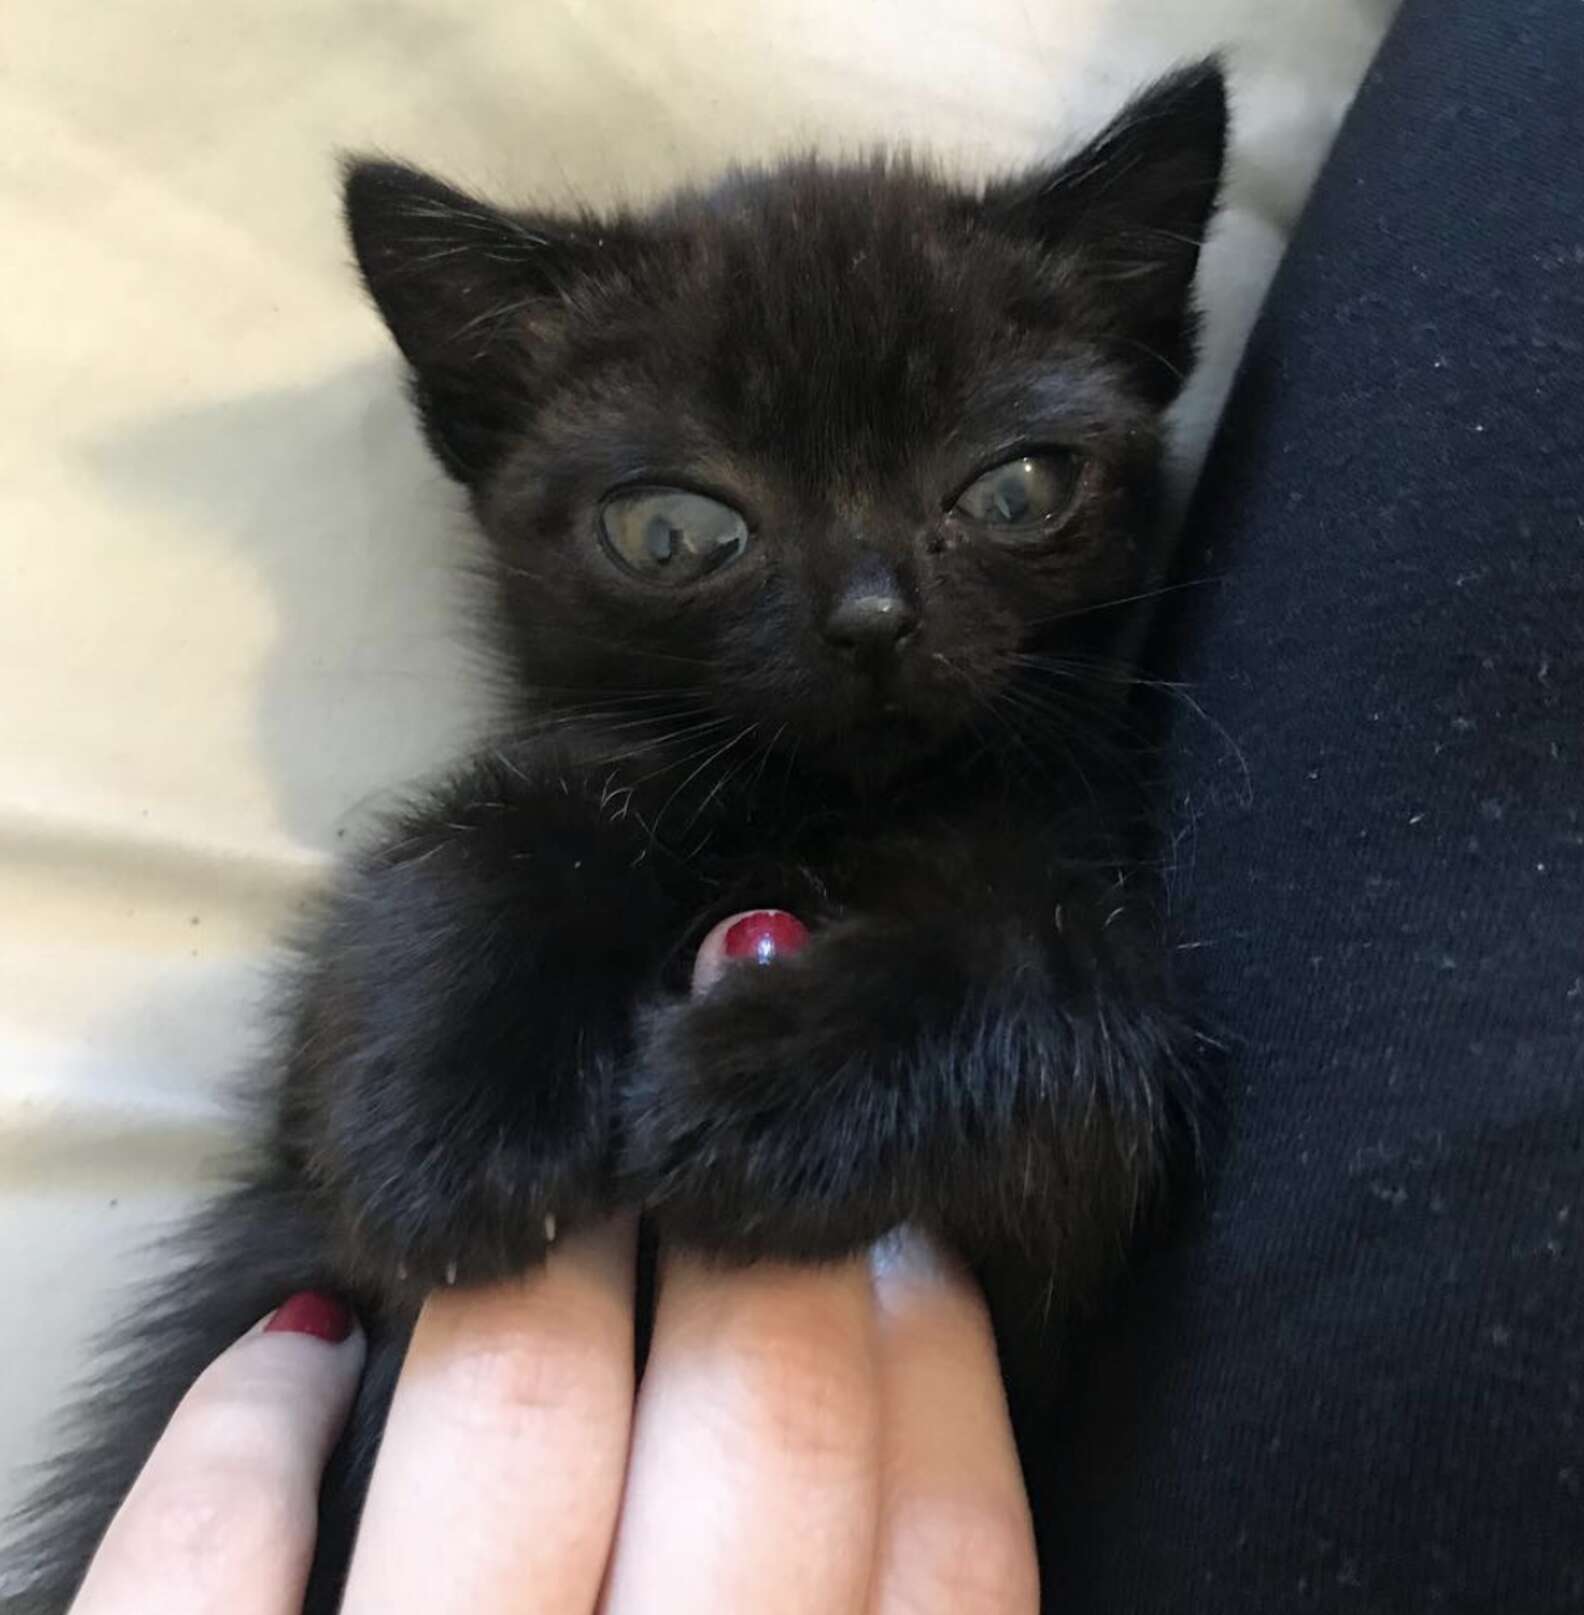 Rescue Kitten's Huge Eyes Make her Look Like an Alien